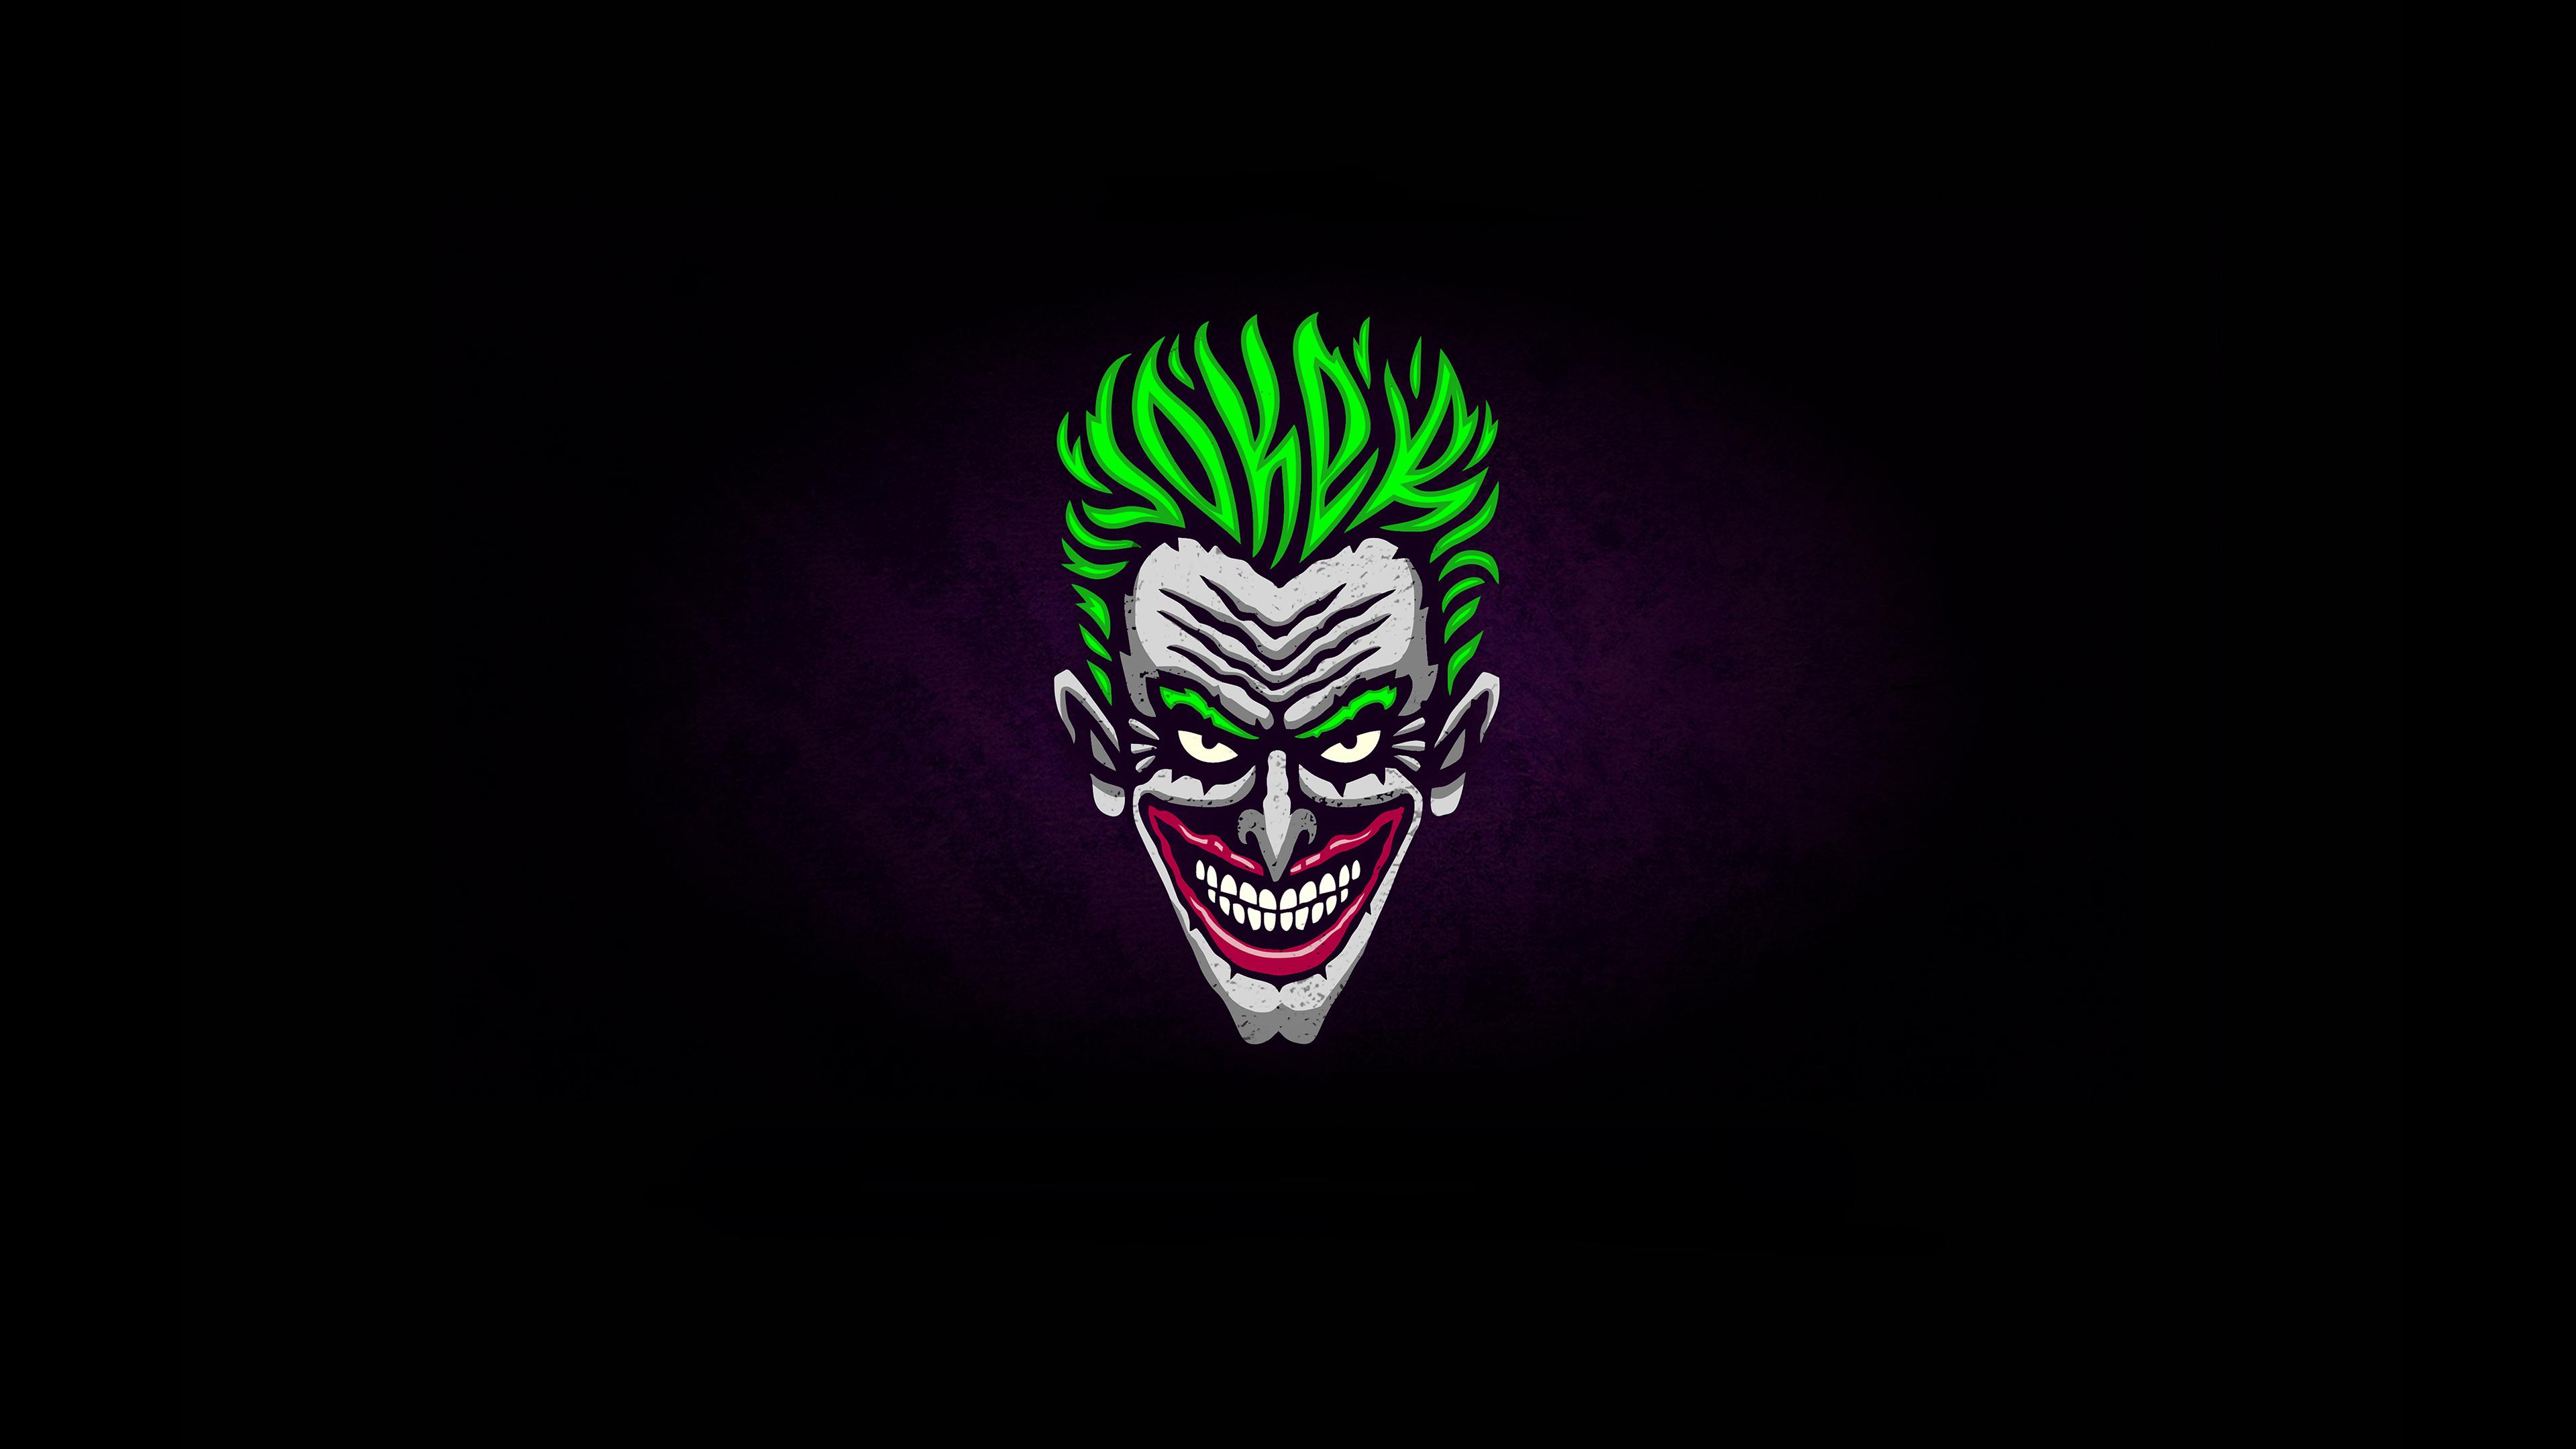 Joker Illustration Minimalist Wallpapers 4k Ultra HD ID:3811